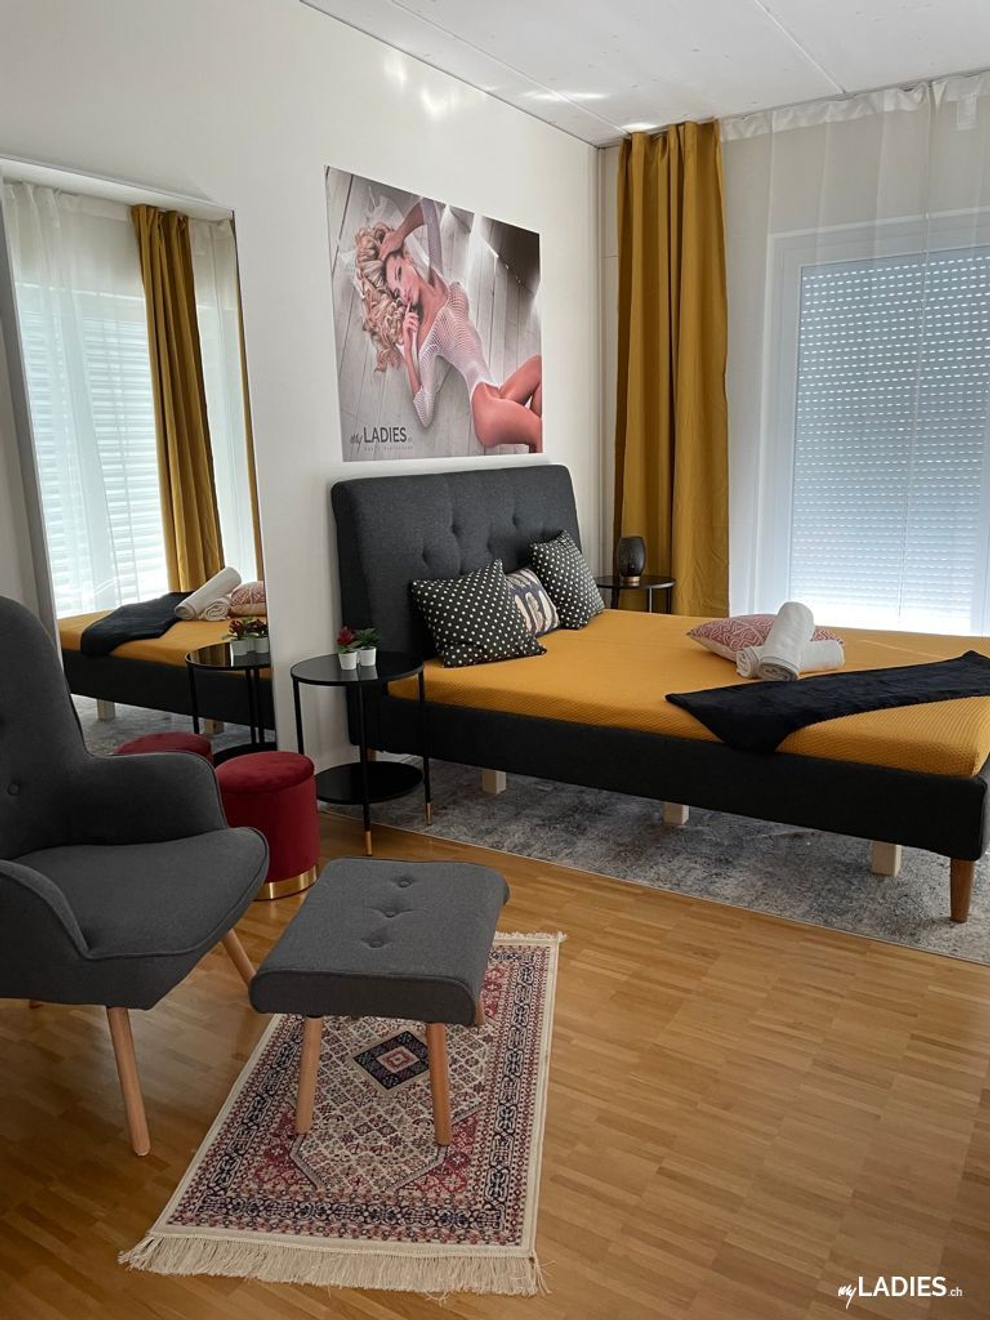 Zimmer / Rooms / Habitaciones in Einsiedeln / Bild 2